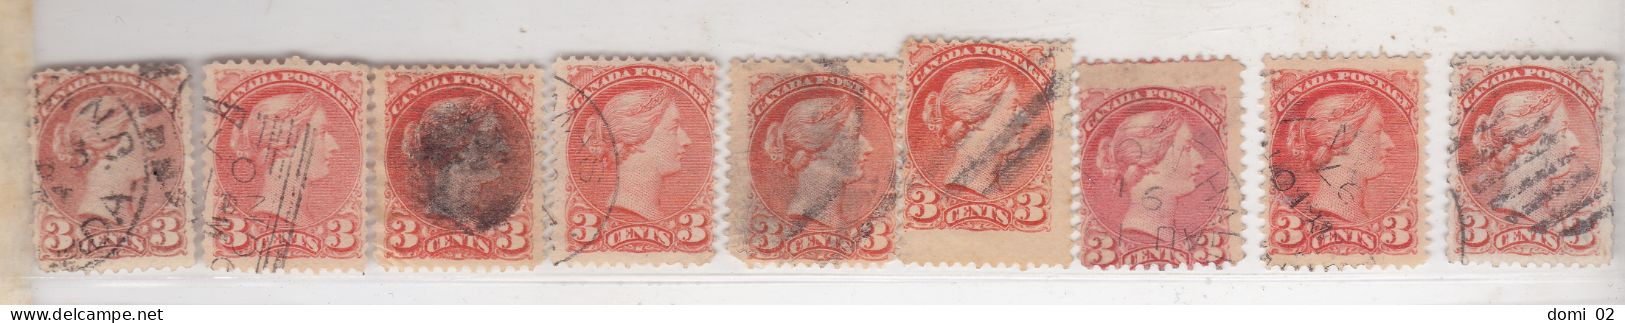 Reine Victoria 3c Orange Y&T 30 Lot De 9 Timbres Pour Teintes Formats Ou Oblitérations - Used Stamps